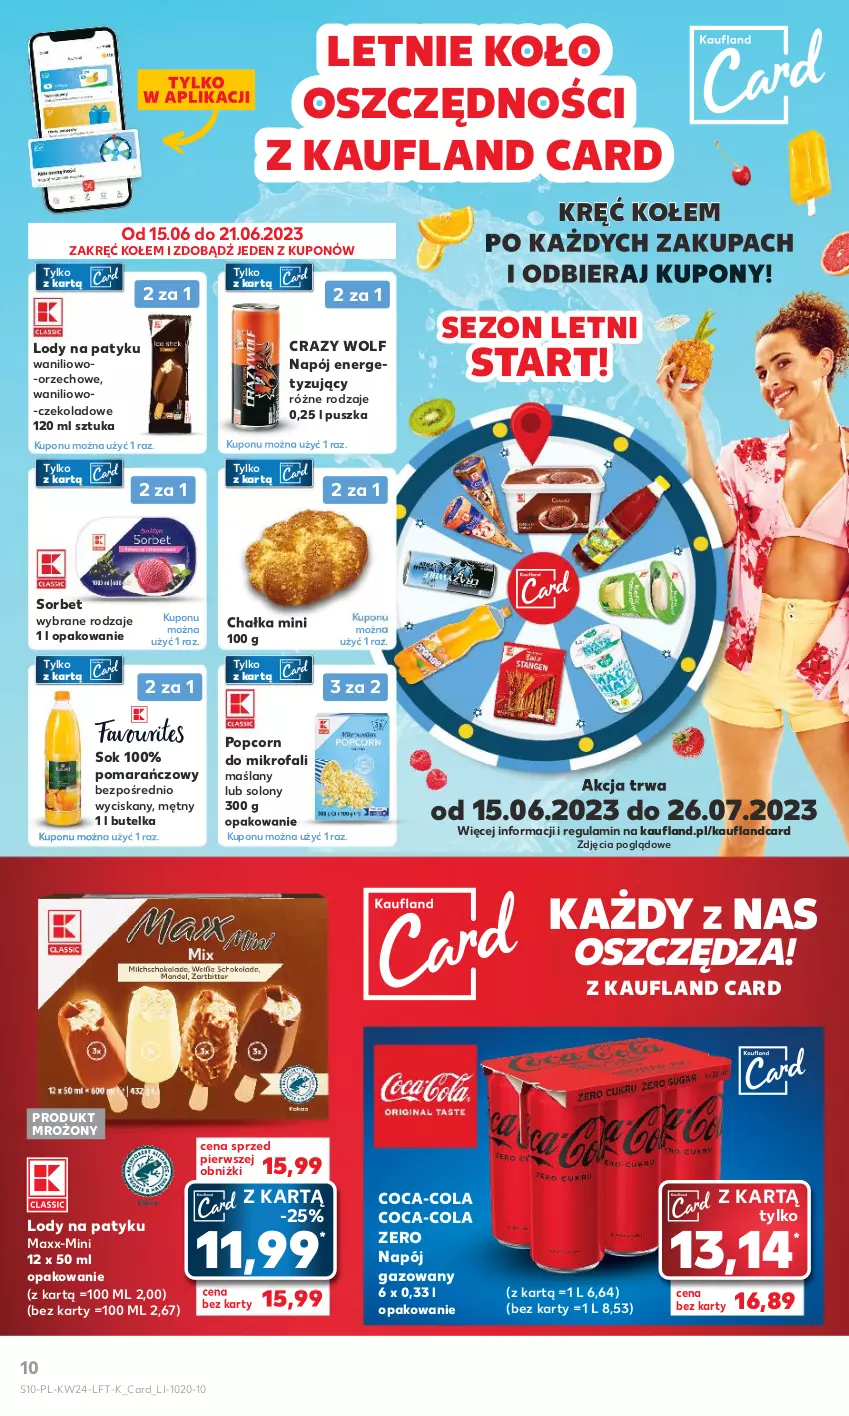 Gazetka promocyjna Kaufland - Gazetka tygodnia - ważna 15.06 do 21.06.2023 - strona 10 - produkty: Coca-Cola, Fa, Lody, Napój, Napój gazowany, Popcorn, Sok